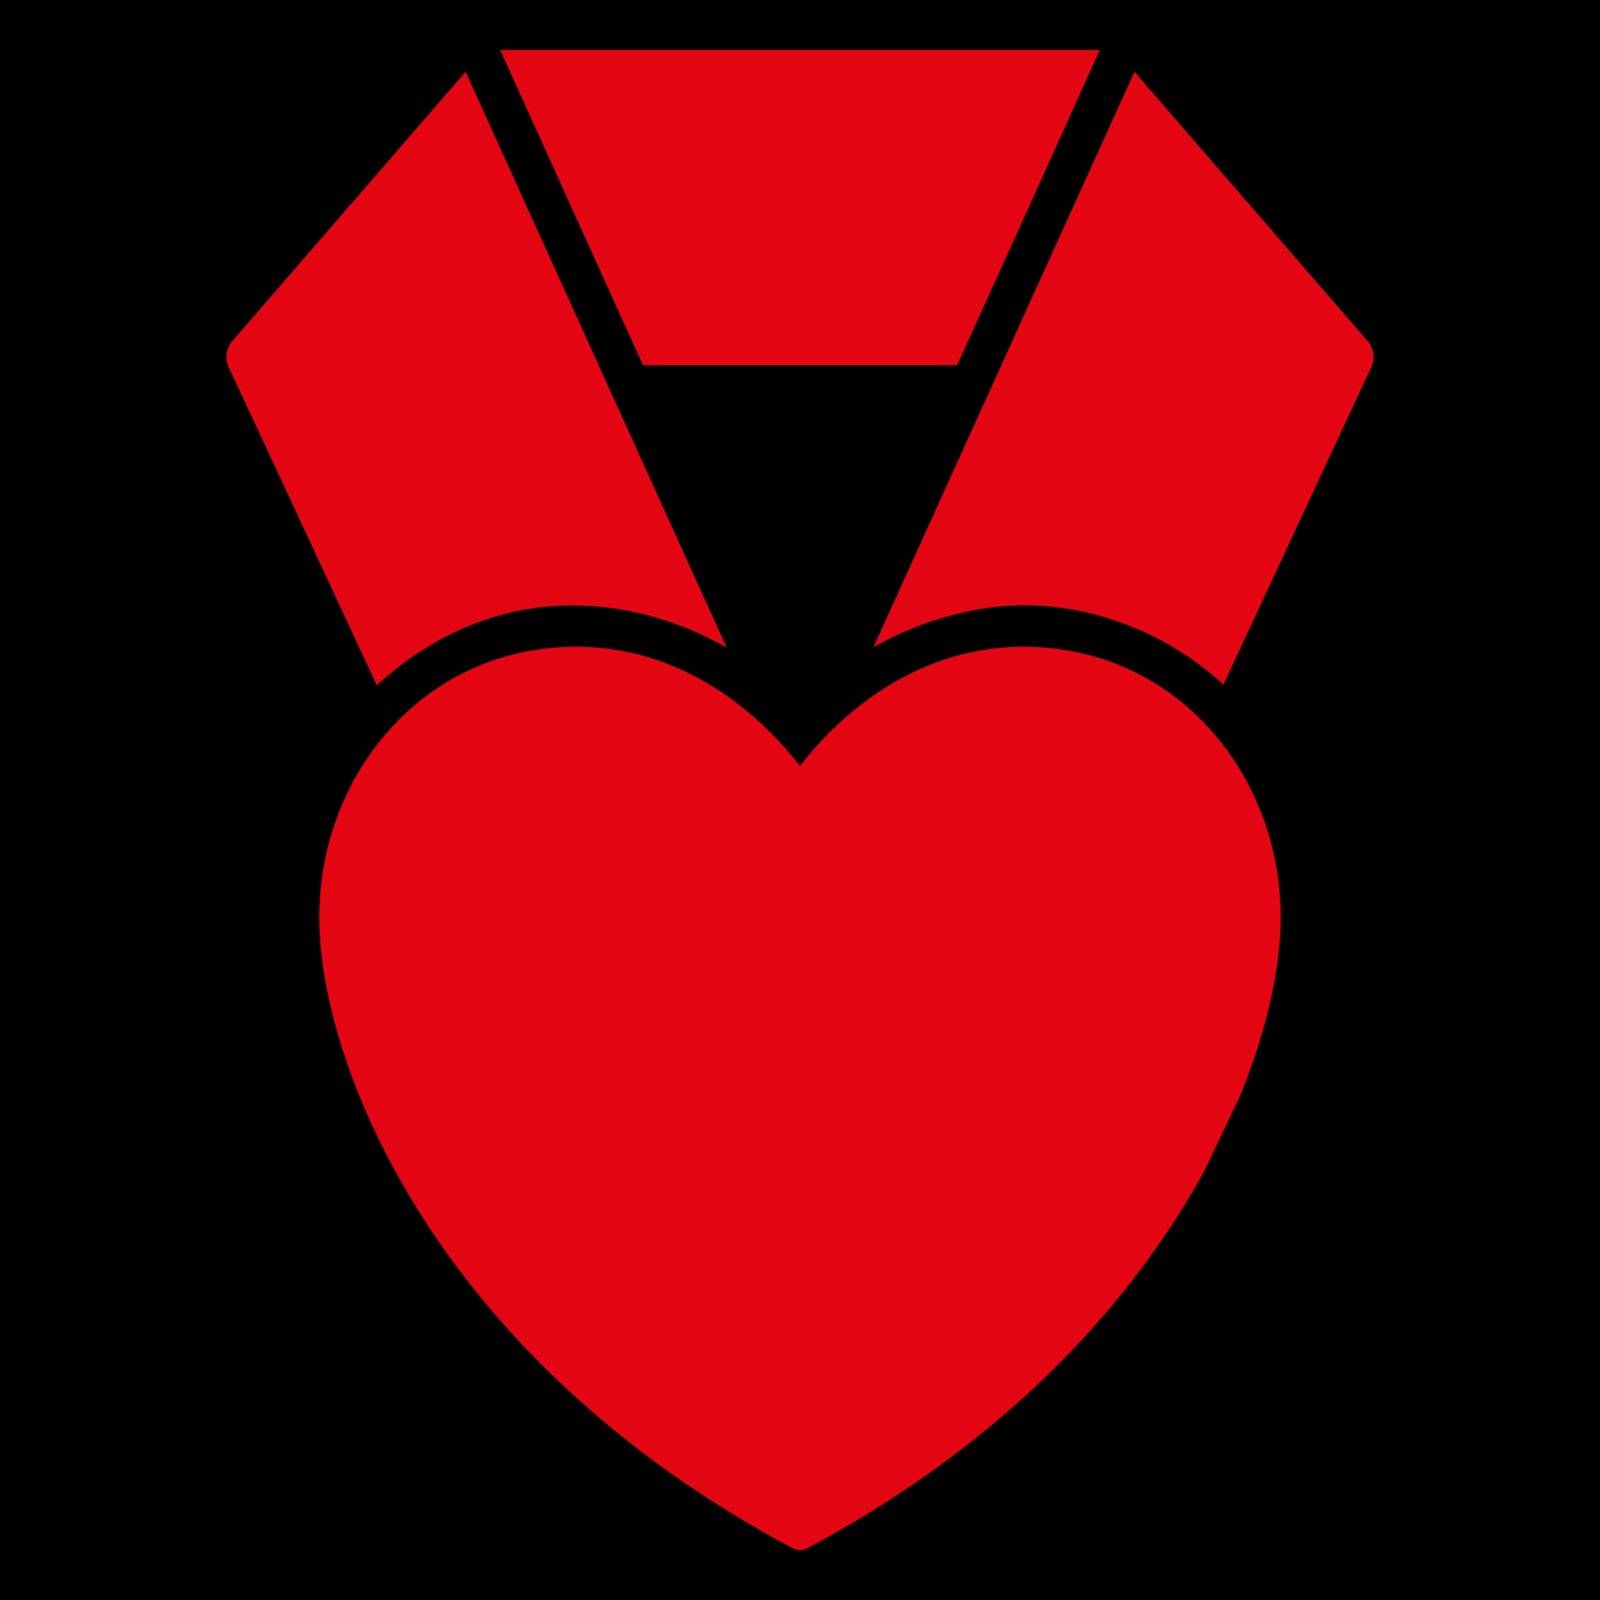 Heart Award Icon by ahasoft